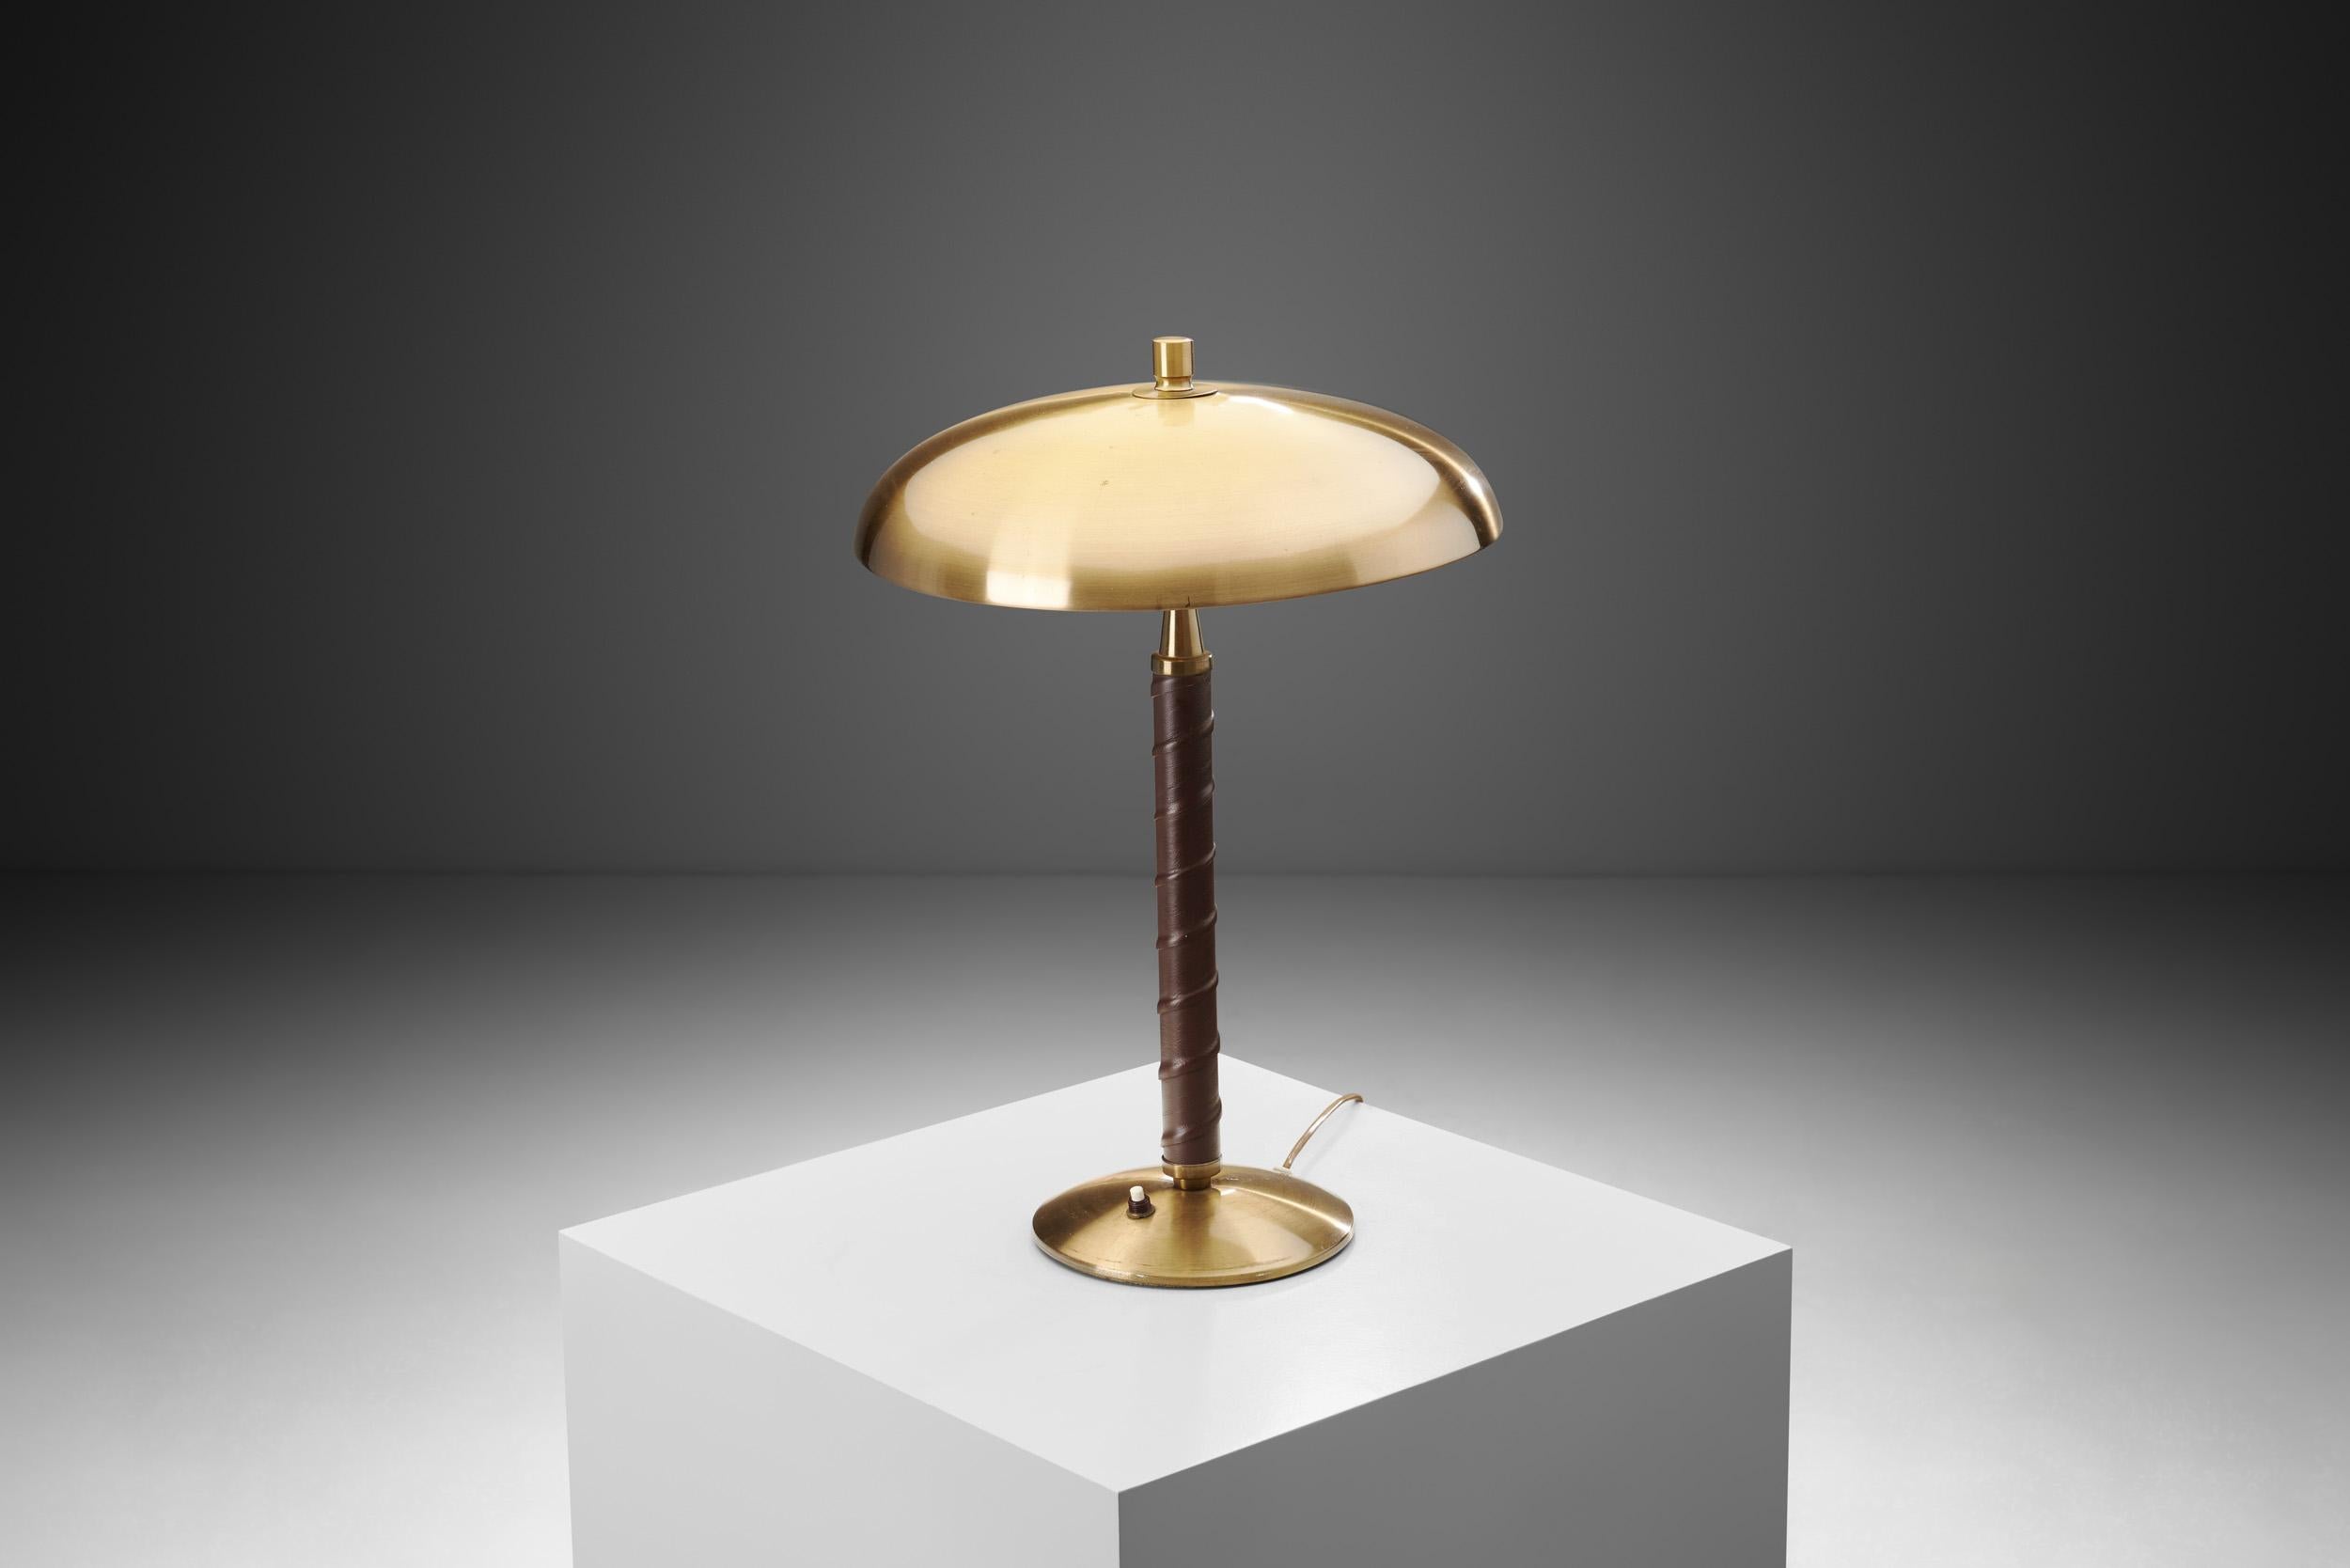 Diese stilvolle Tischleuchte ist ein herrlich unverwechselbares Modell, dessen Details sofort erkennbar sind. Nach Angaben des Museums von Malmö gründete Einar Bäckström 1918 seine Werkstatt für die Herstellung von Beleuchtungskörpern und